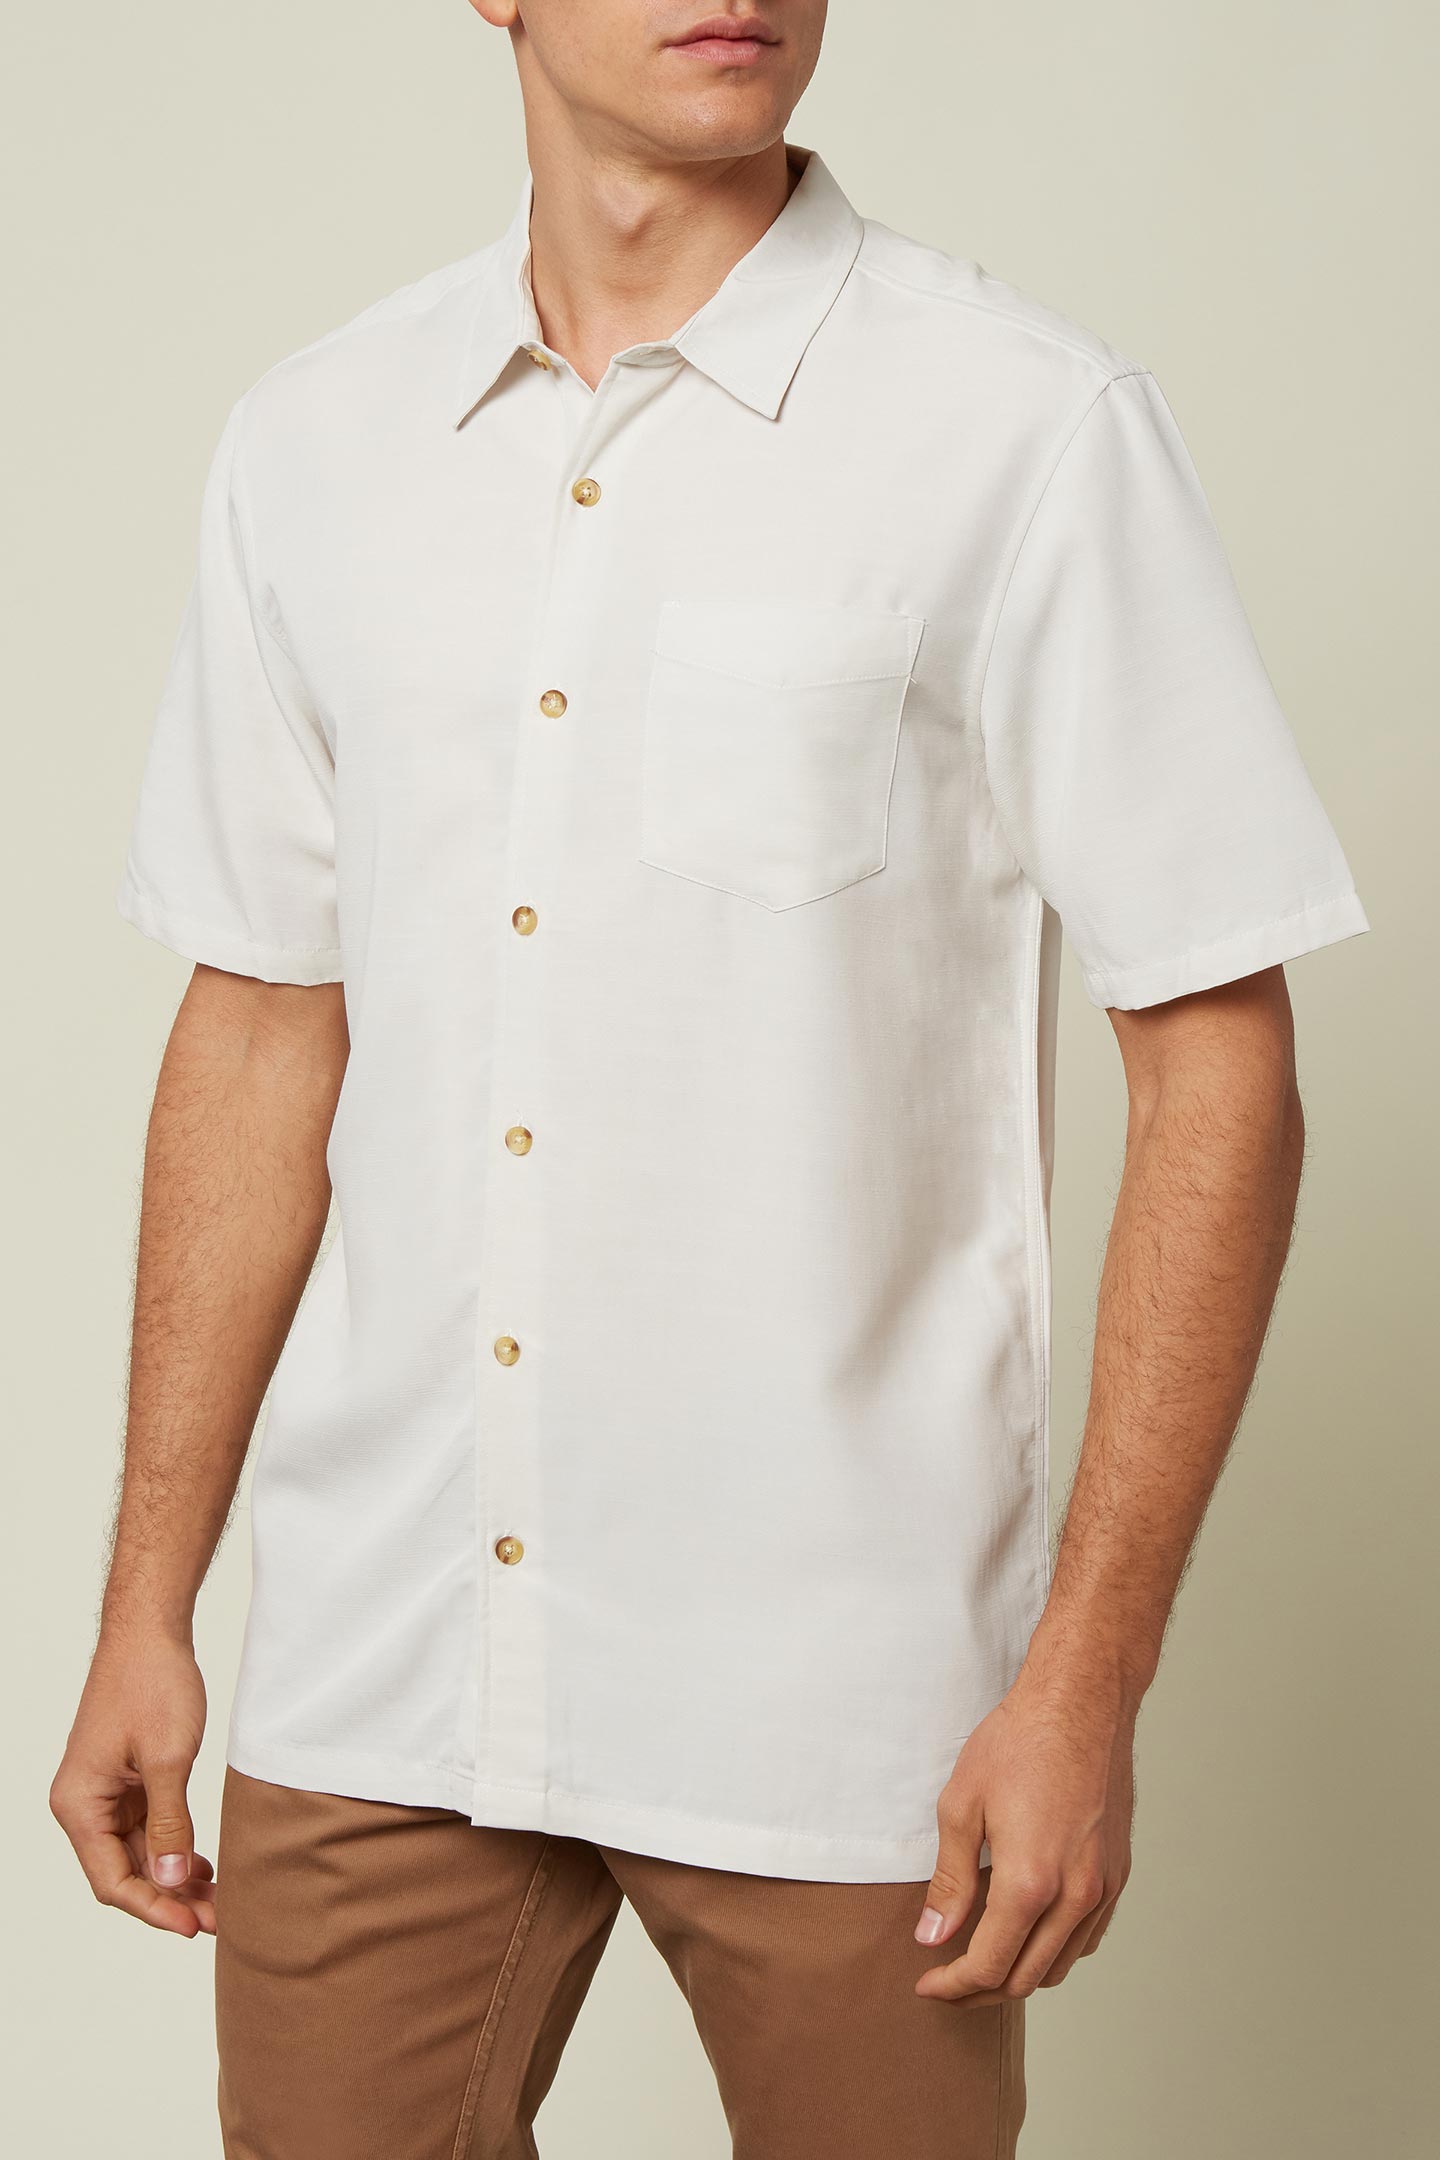 Jack ONeill Mens Short Sleeve Button Down Shirt